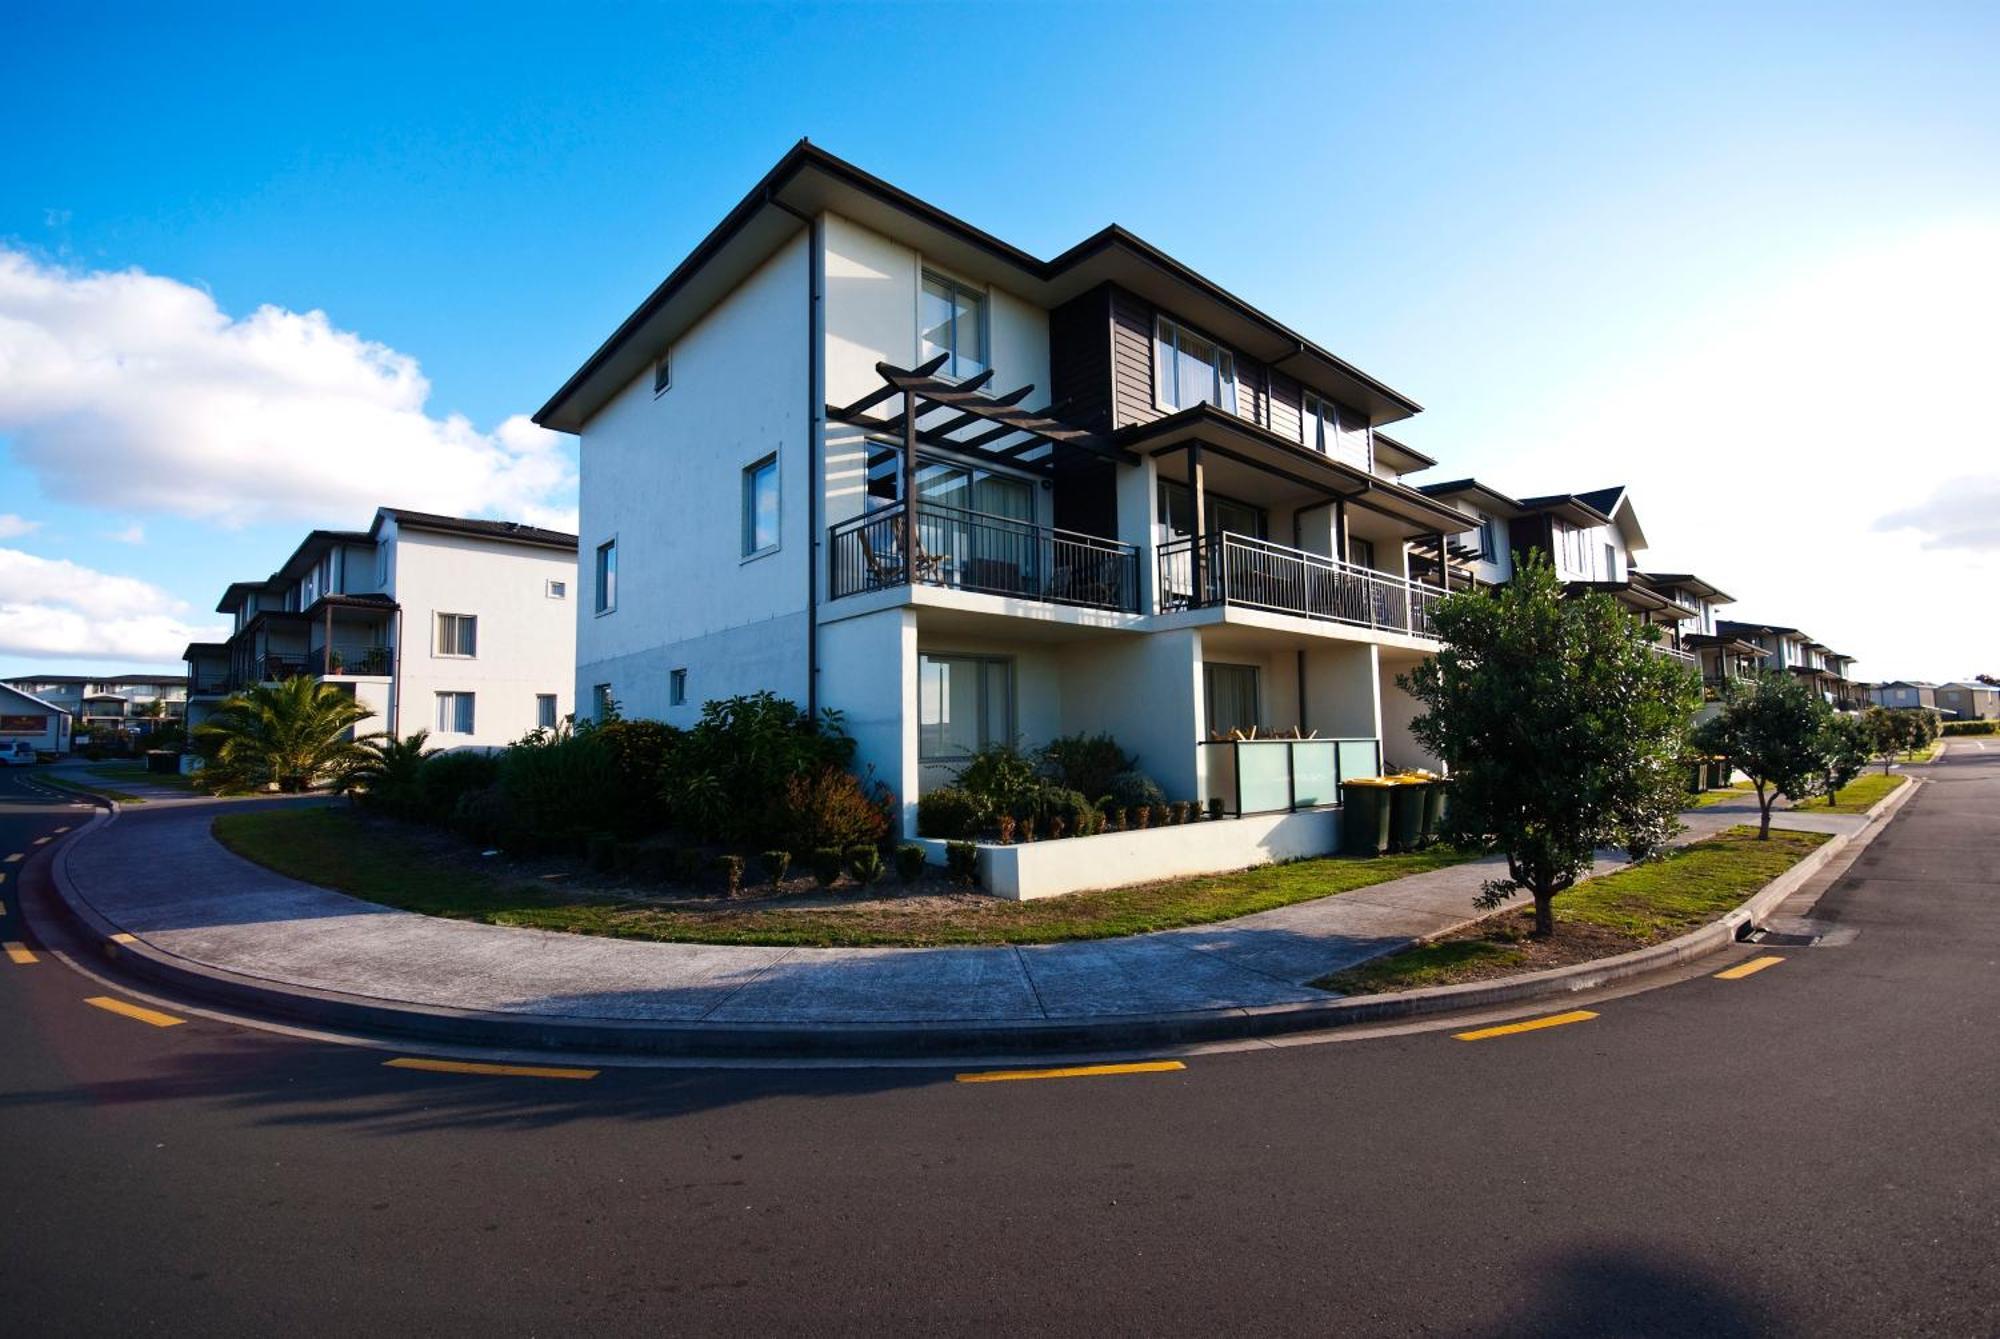 Nesuto Newhaven Aparthotel Auckland Luaran gambar